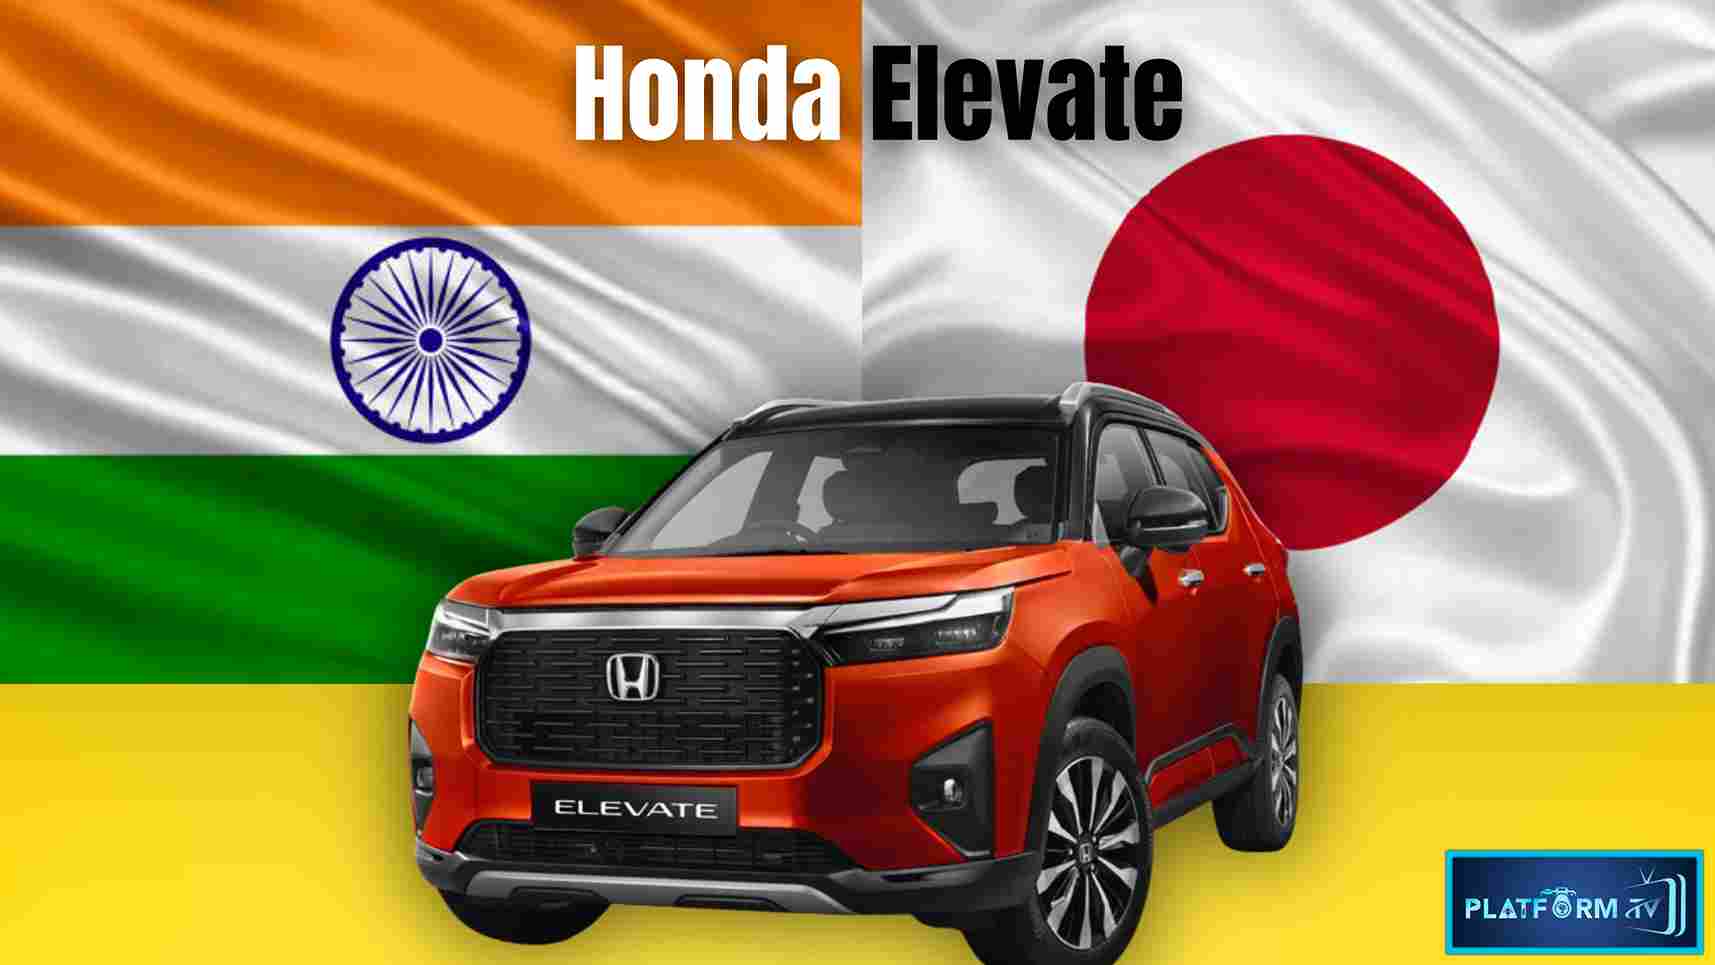 Honda Elevate Car - Platform Tamil